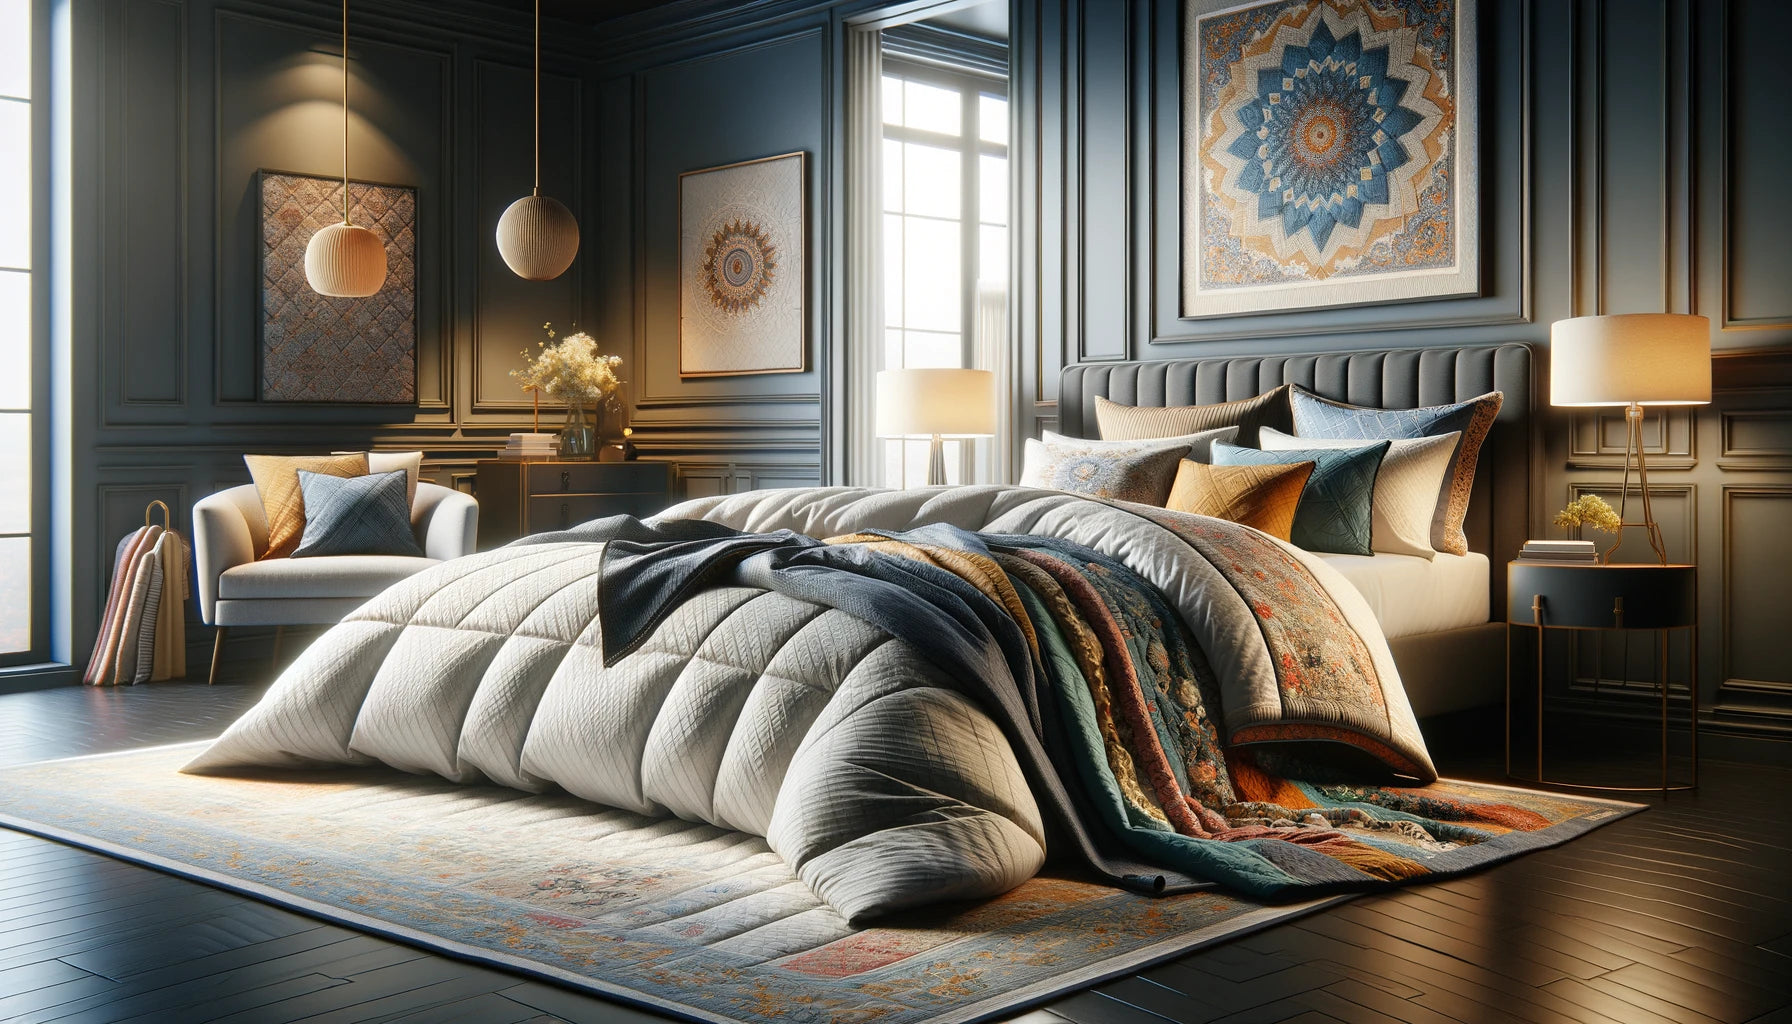 Comforter vs Duvet vs Quilt vs Blanket: Navigating the Bedding Options